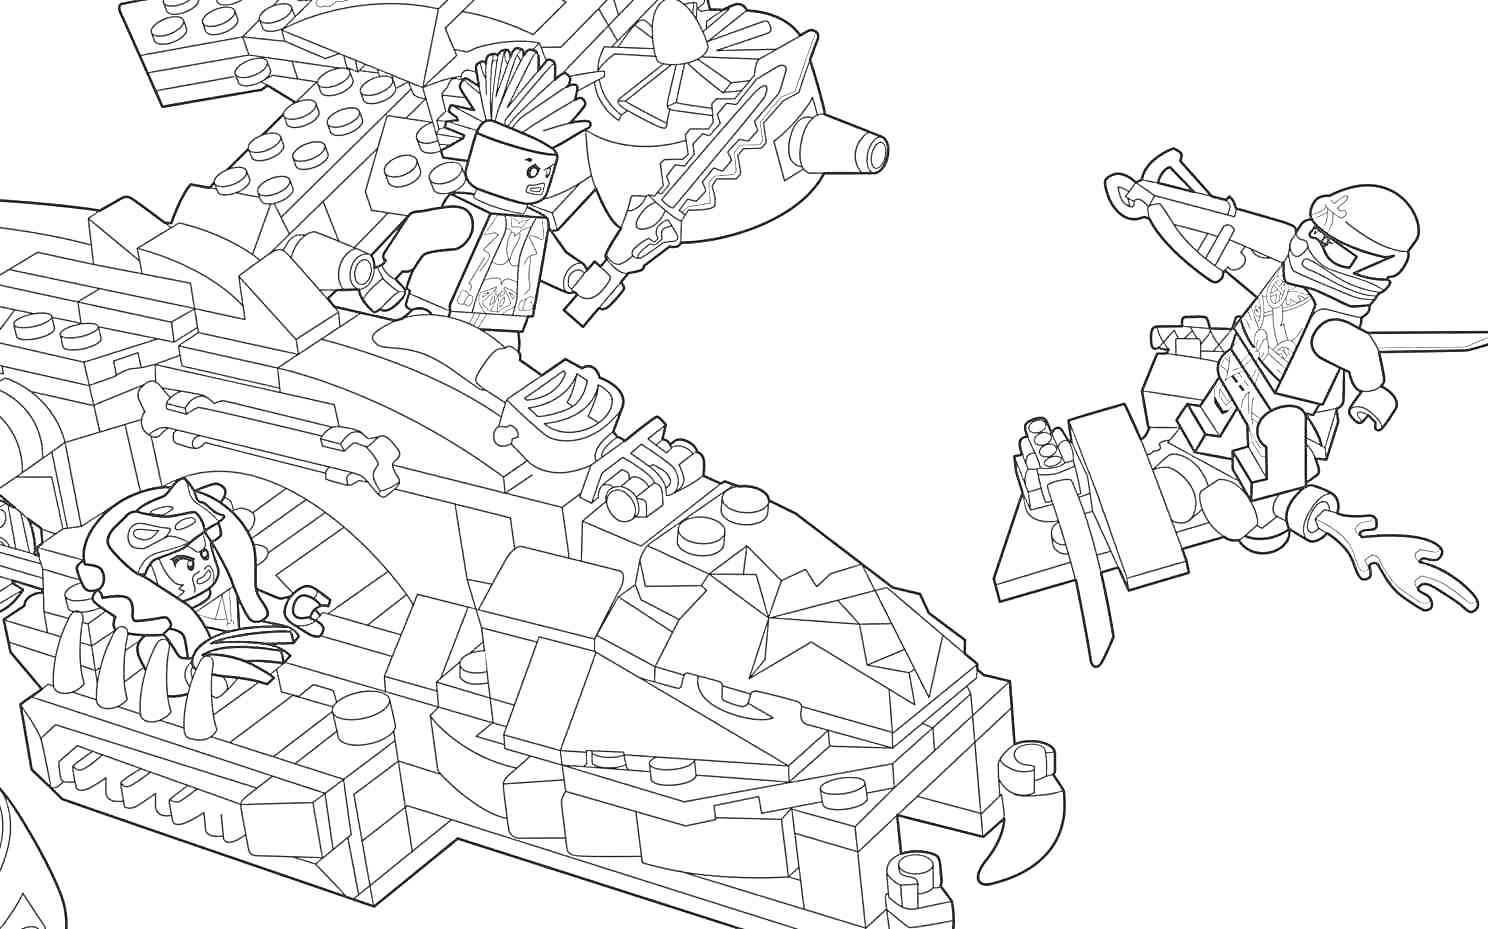 Раскраска Лего-сцена с вертолетом и двумя минифигурками, одна из которых находится в вертолете, а другая летит на ранце с огнем